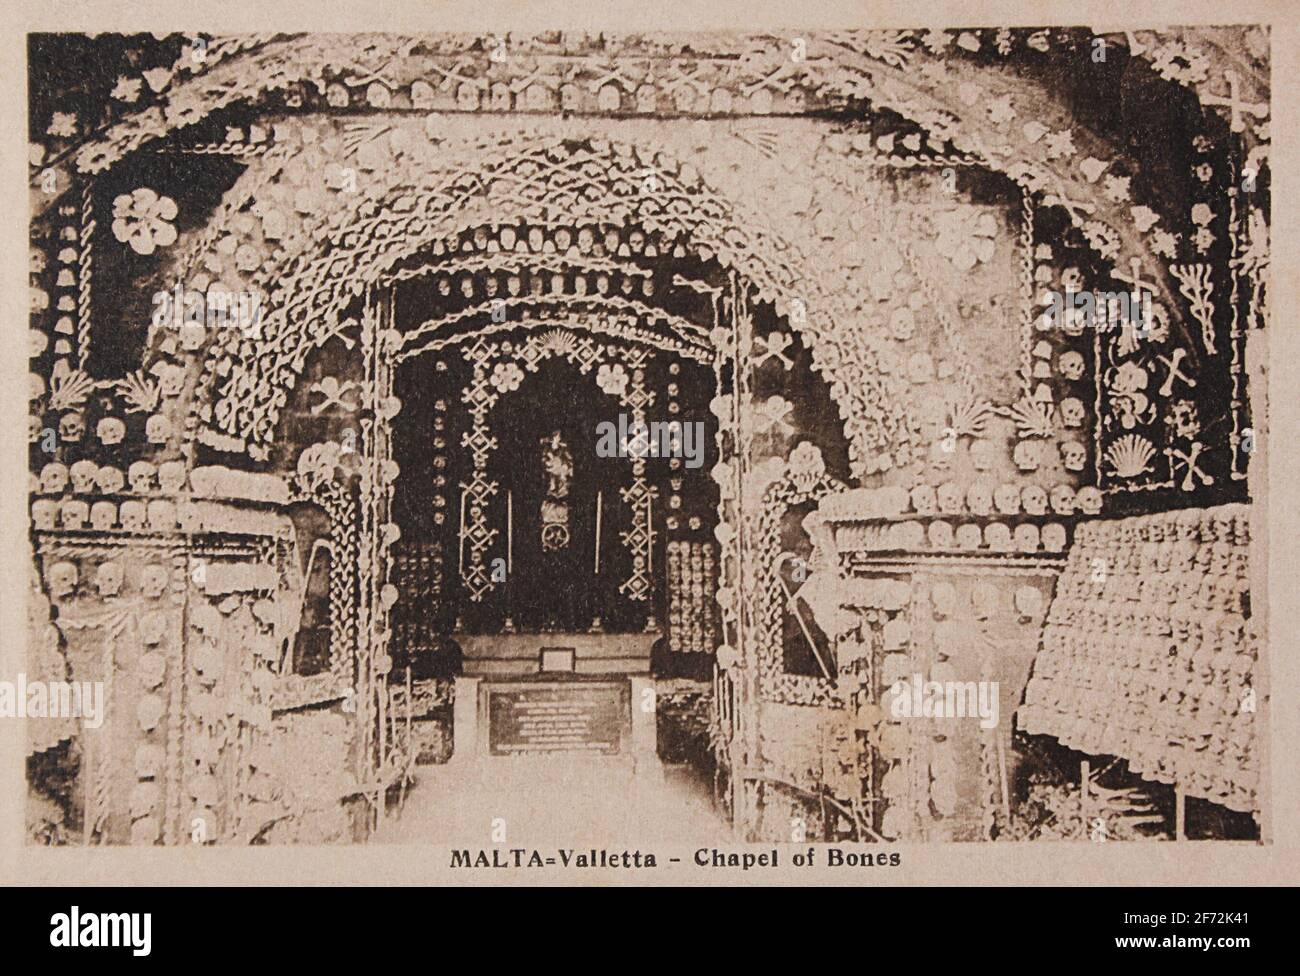 Die Kapelle der Knochen (Nibbia-Kapelle) in Valletta. 1619 gegründet, wurde es 1852 mit menschlichen Überresten geschmückt. Zerstört durch Bombenangriffe im Zweiten Weltkrieg. Stockfoto